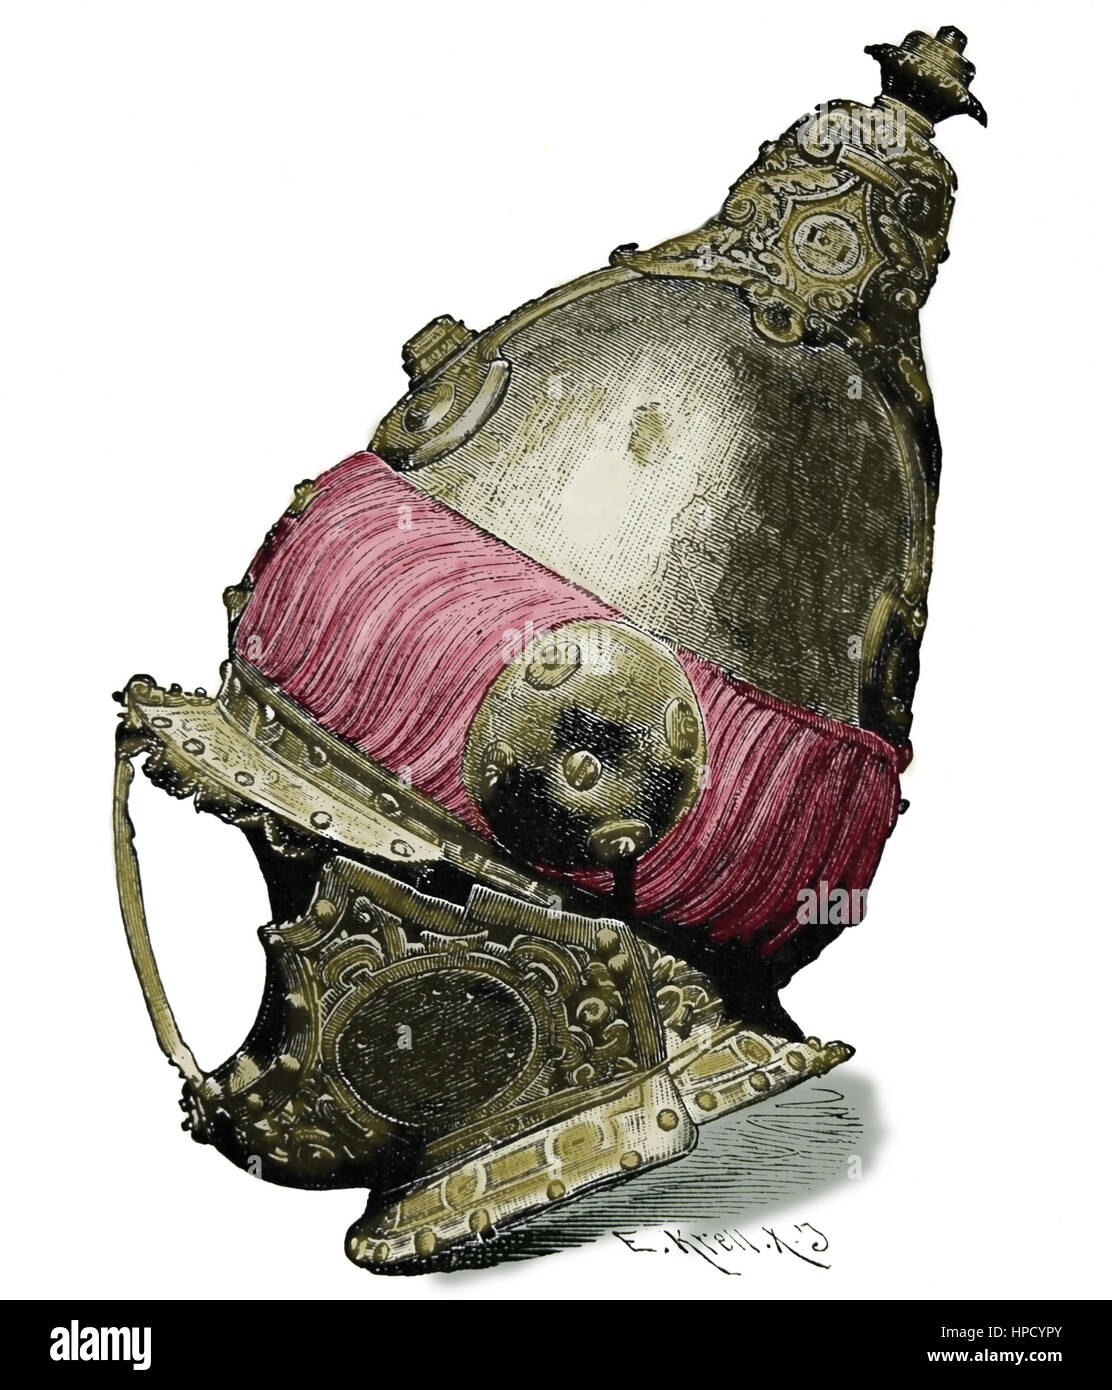 Armet, casque turc de la bataille de Lépante, 1571. La gravure. Banque D'Images